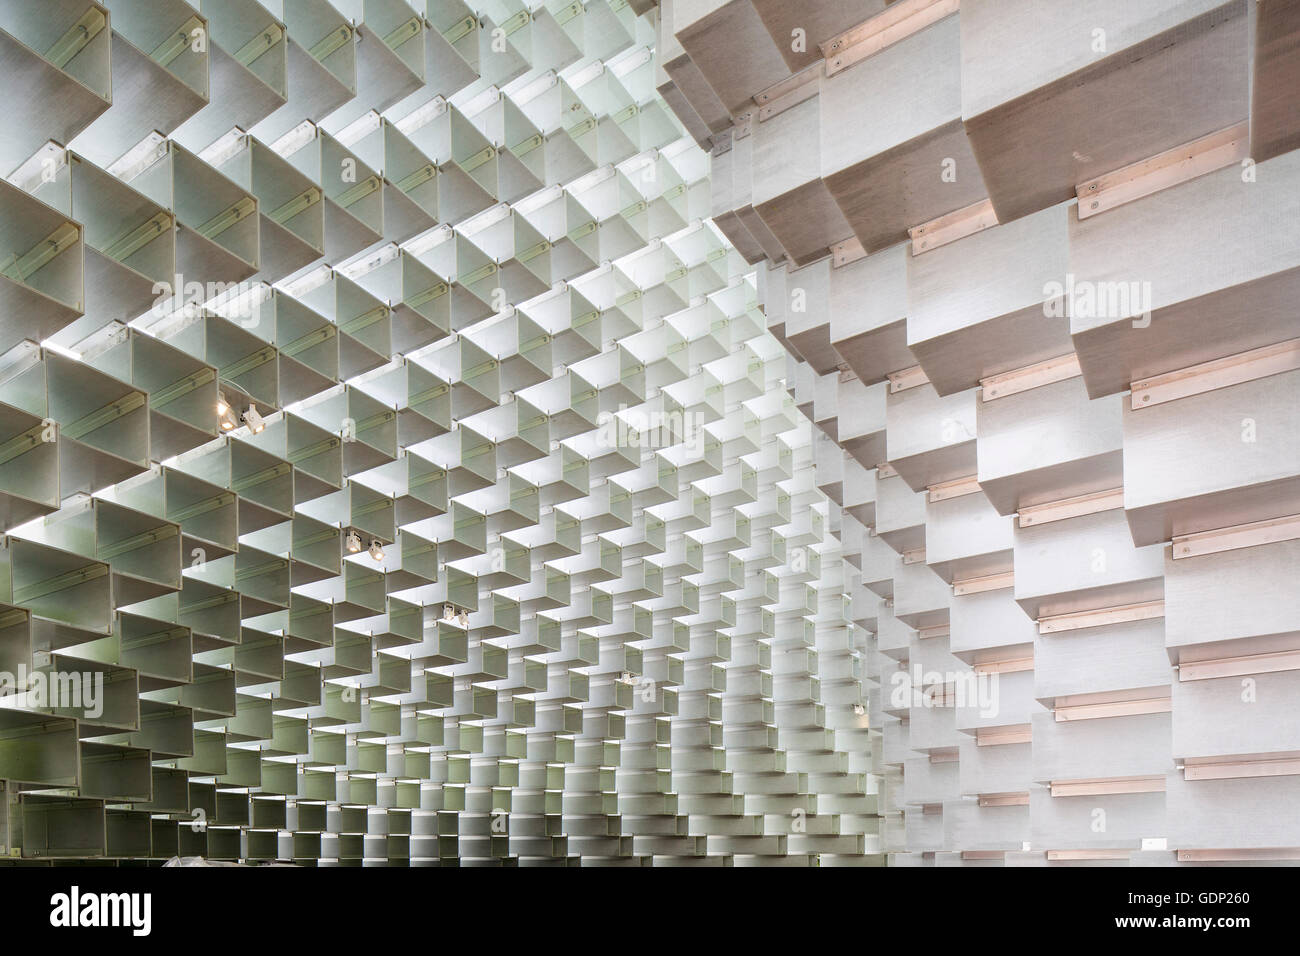 Interieur-Detail-Ansicht des Pavillons. Serpentine Pavillon 2016, Kensington, Vereinigtes Königreich. Architekt: Bjarke Ingels, 2016. Stockfoto